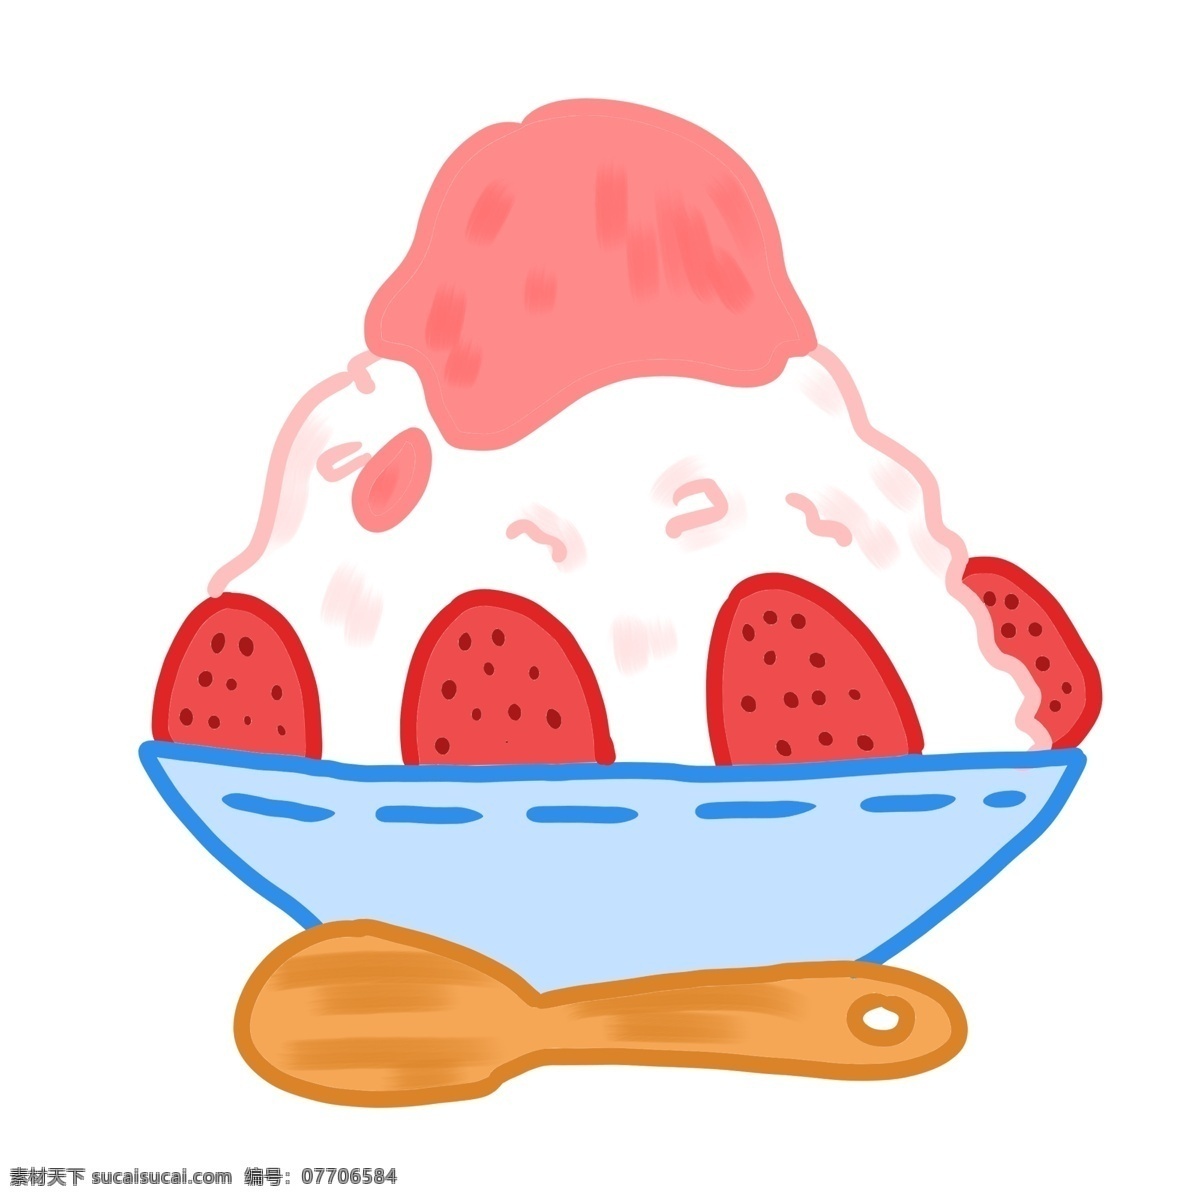 精美 美味 冰雹 插画 小吃插画 卡通食物插画 食物 美味的食物 粉色冰雹 草莓冷饮插画 创意冰雹插画